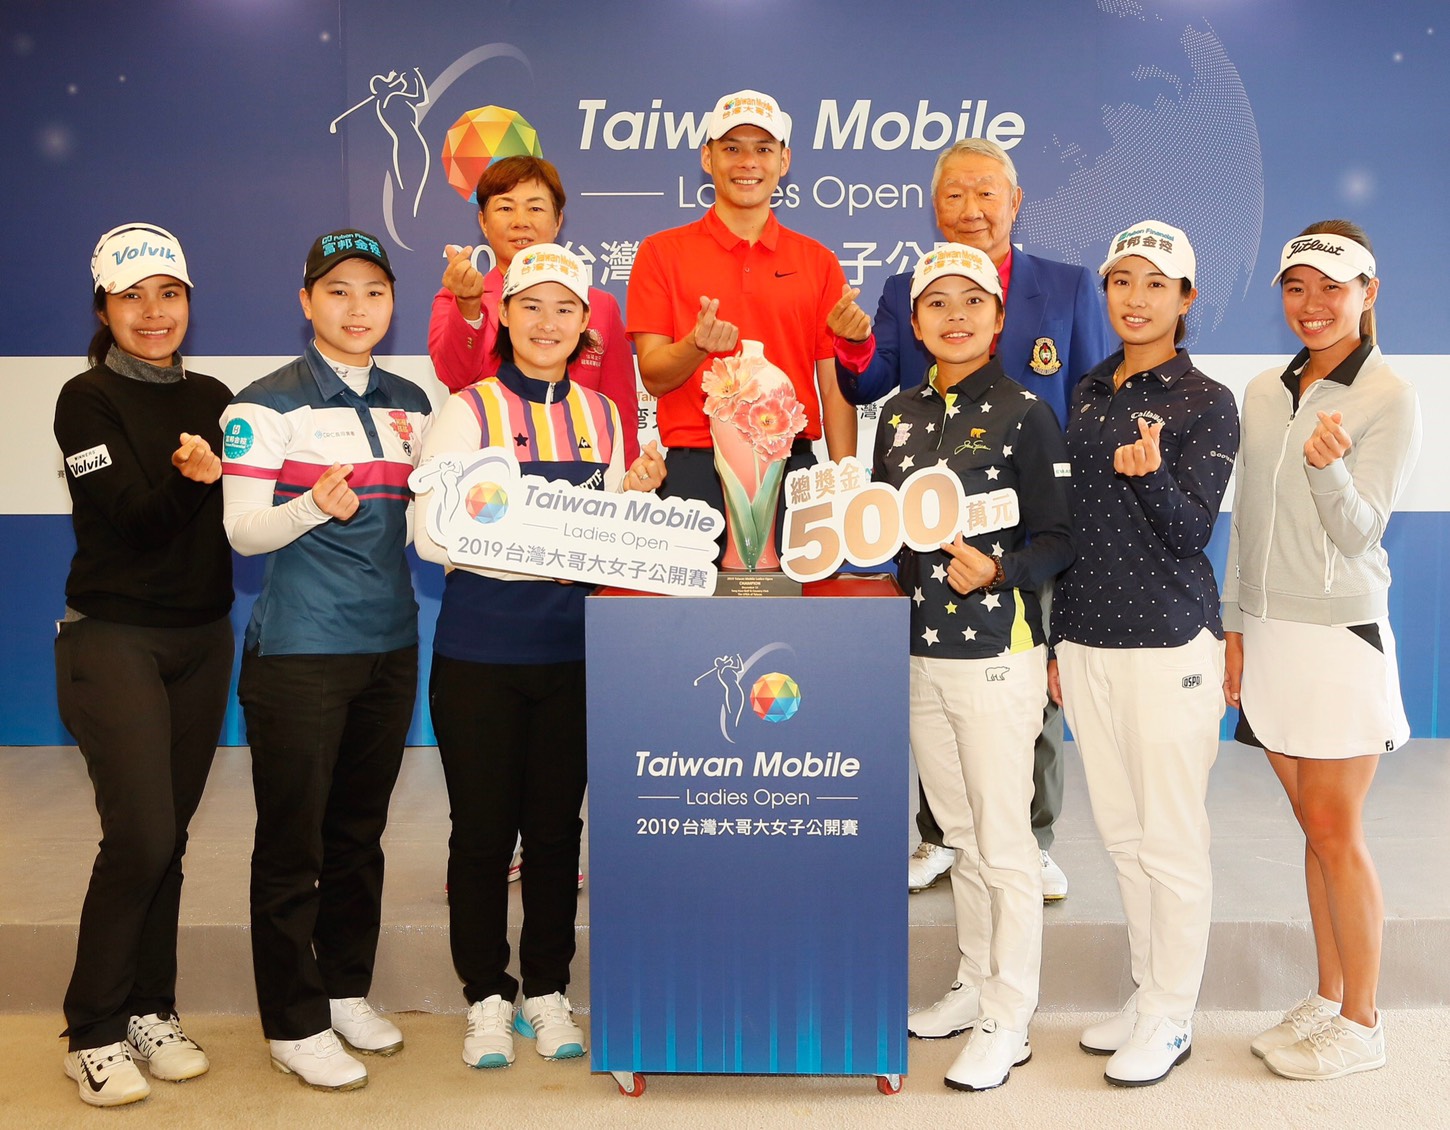 (後排左起)TLPGA理事長鄭美琦、台灣大哥大總經理林之晨與東華高爾夫俱樂部總經理張歐誠，賽前記者會與參賽明星選手共同比出手指愛心手勢